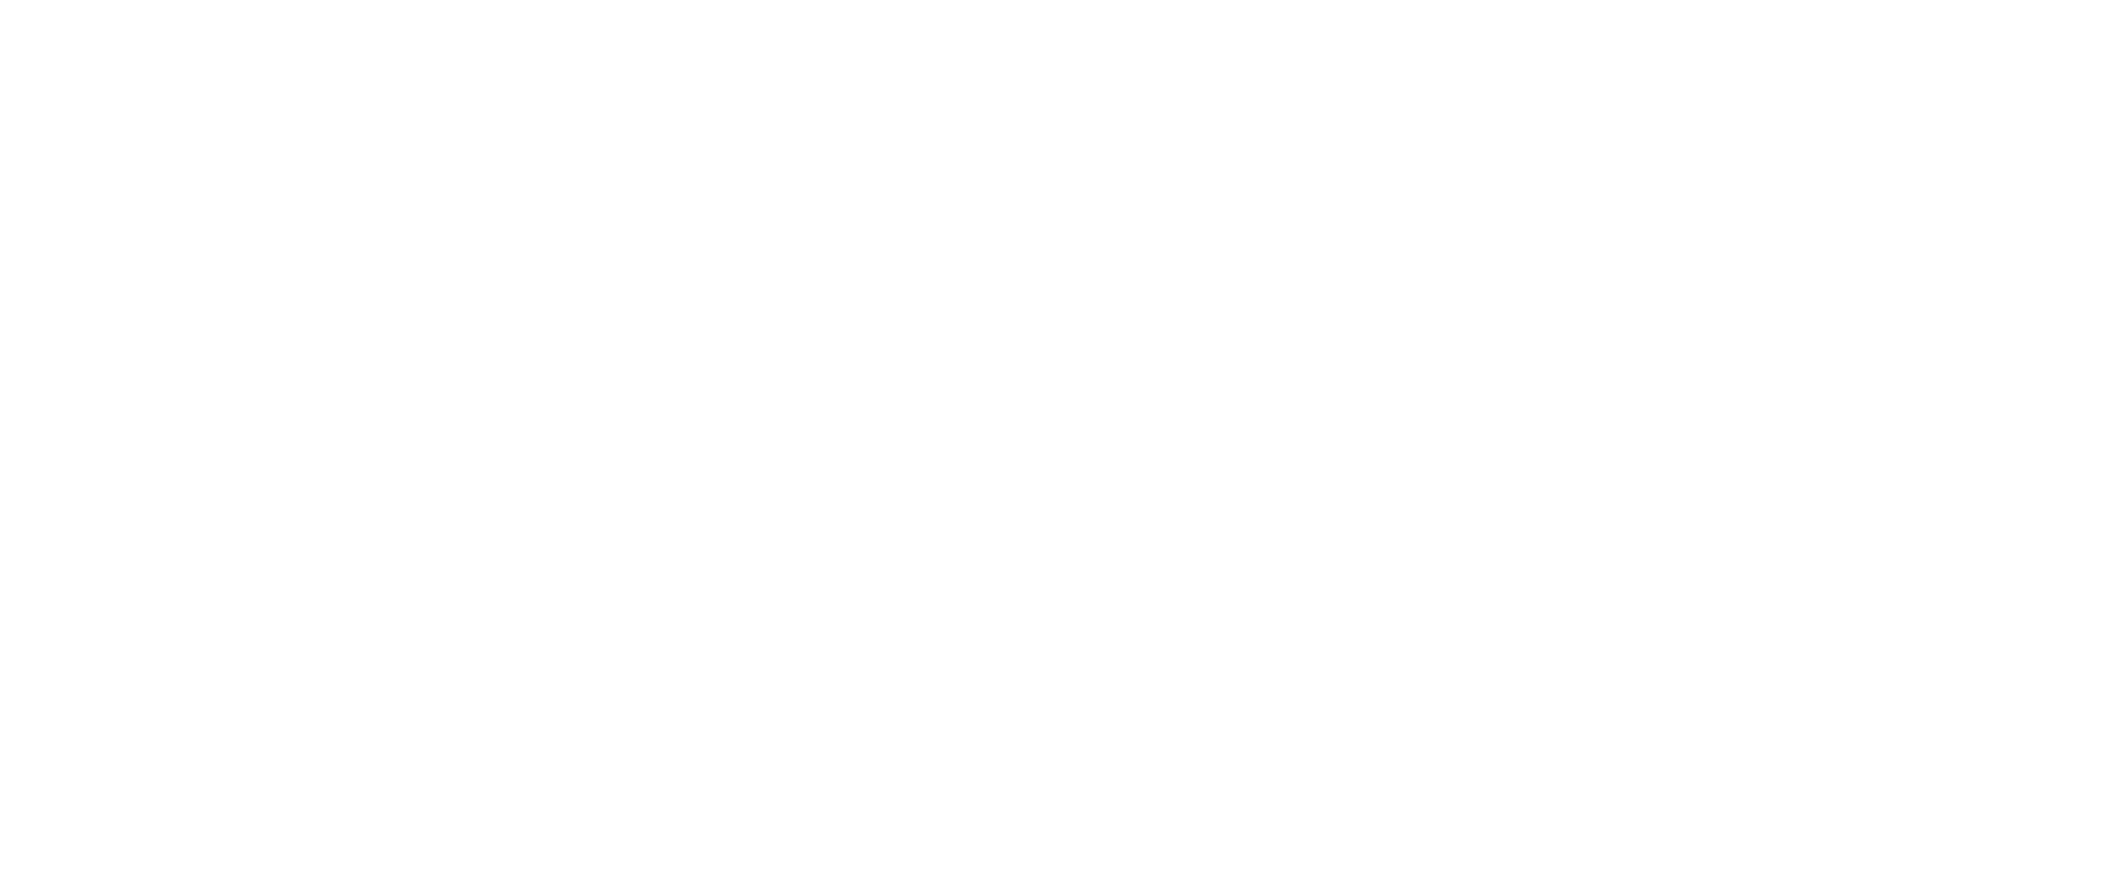 hazhe dj logo